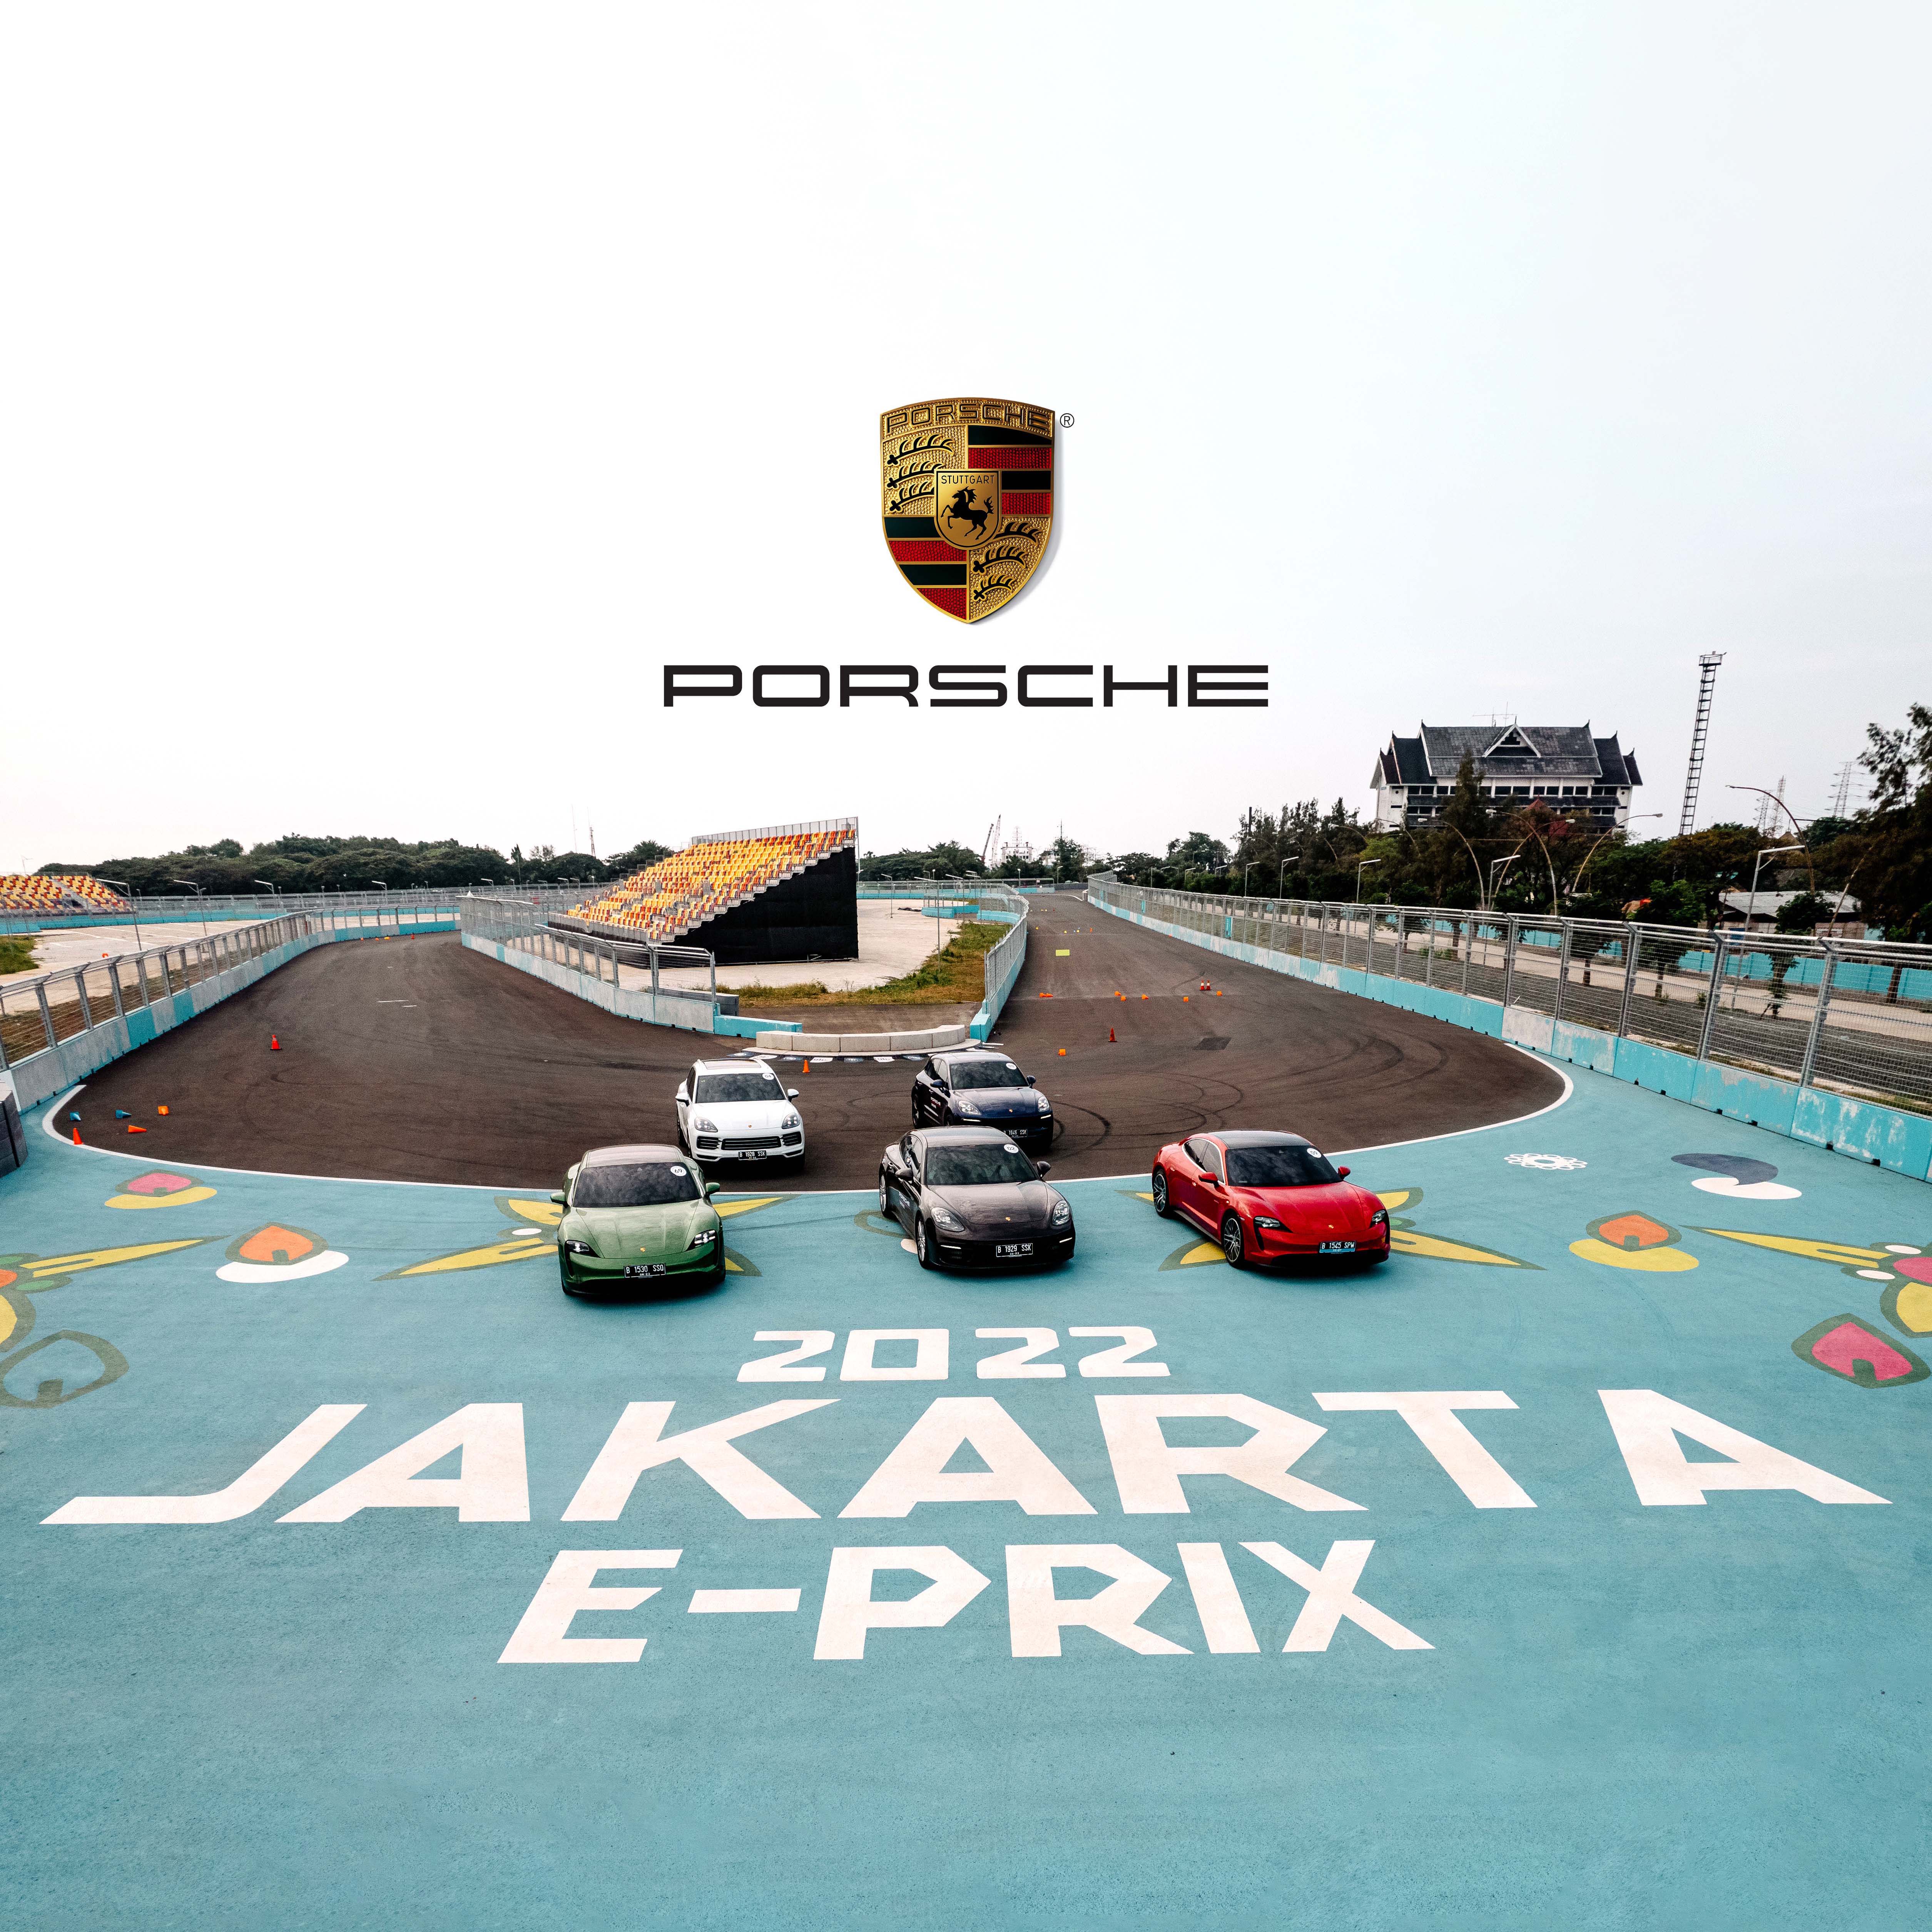 E-prix Porsche Indonesia